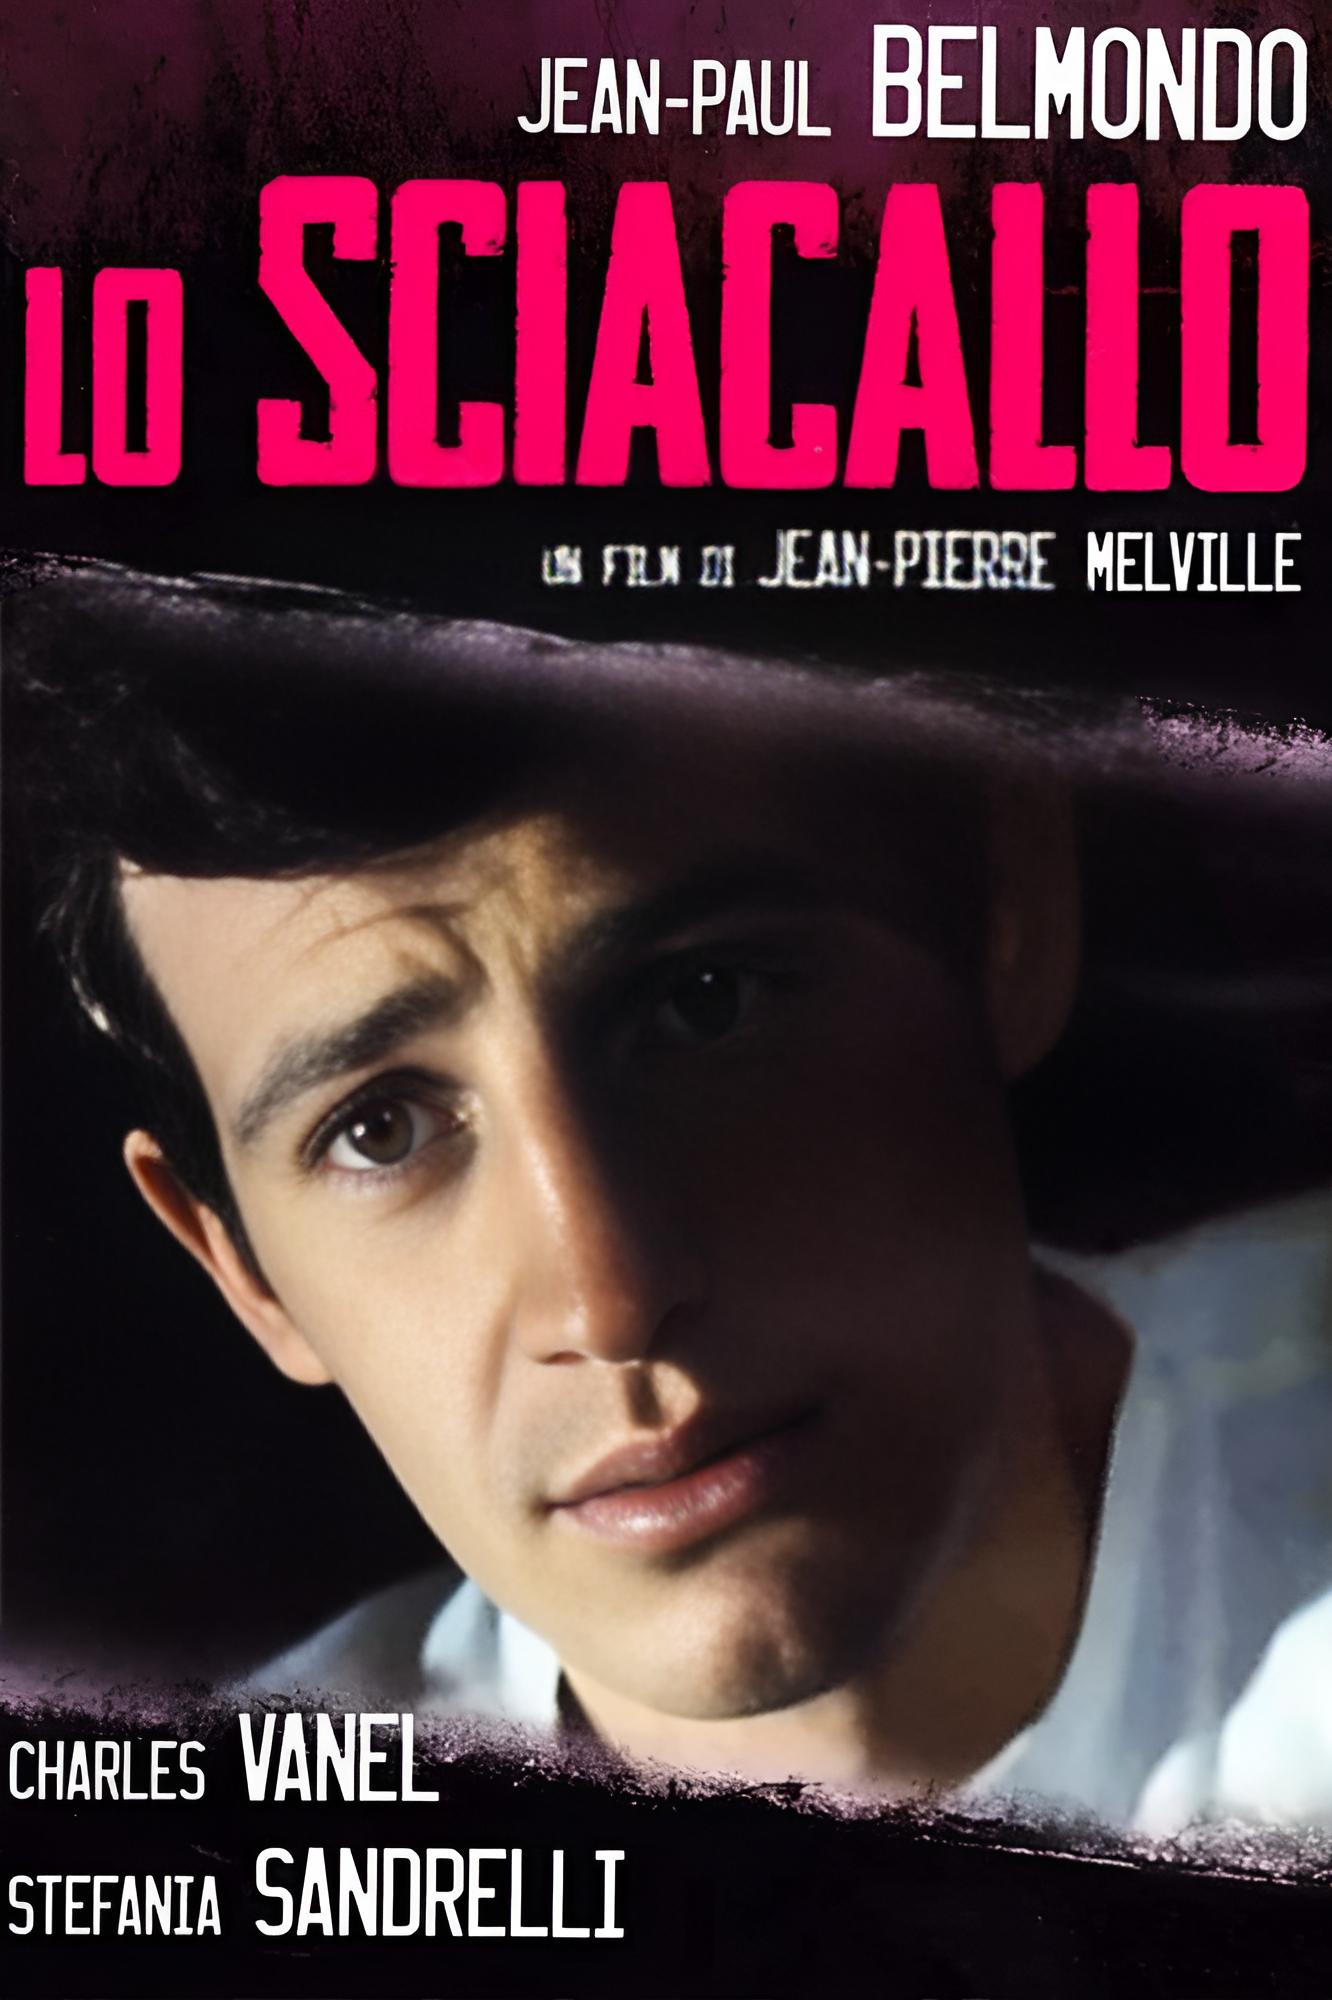 Lo sciacallo (1962)